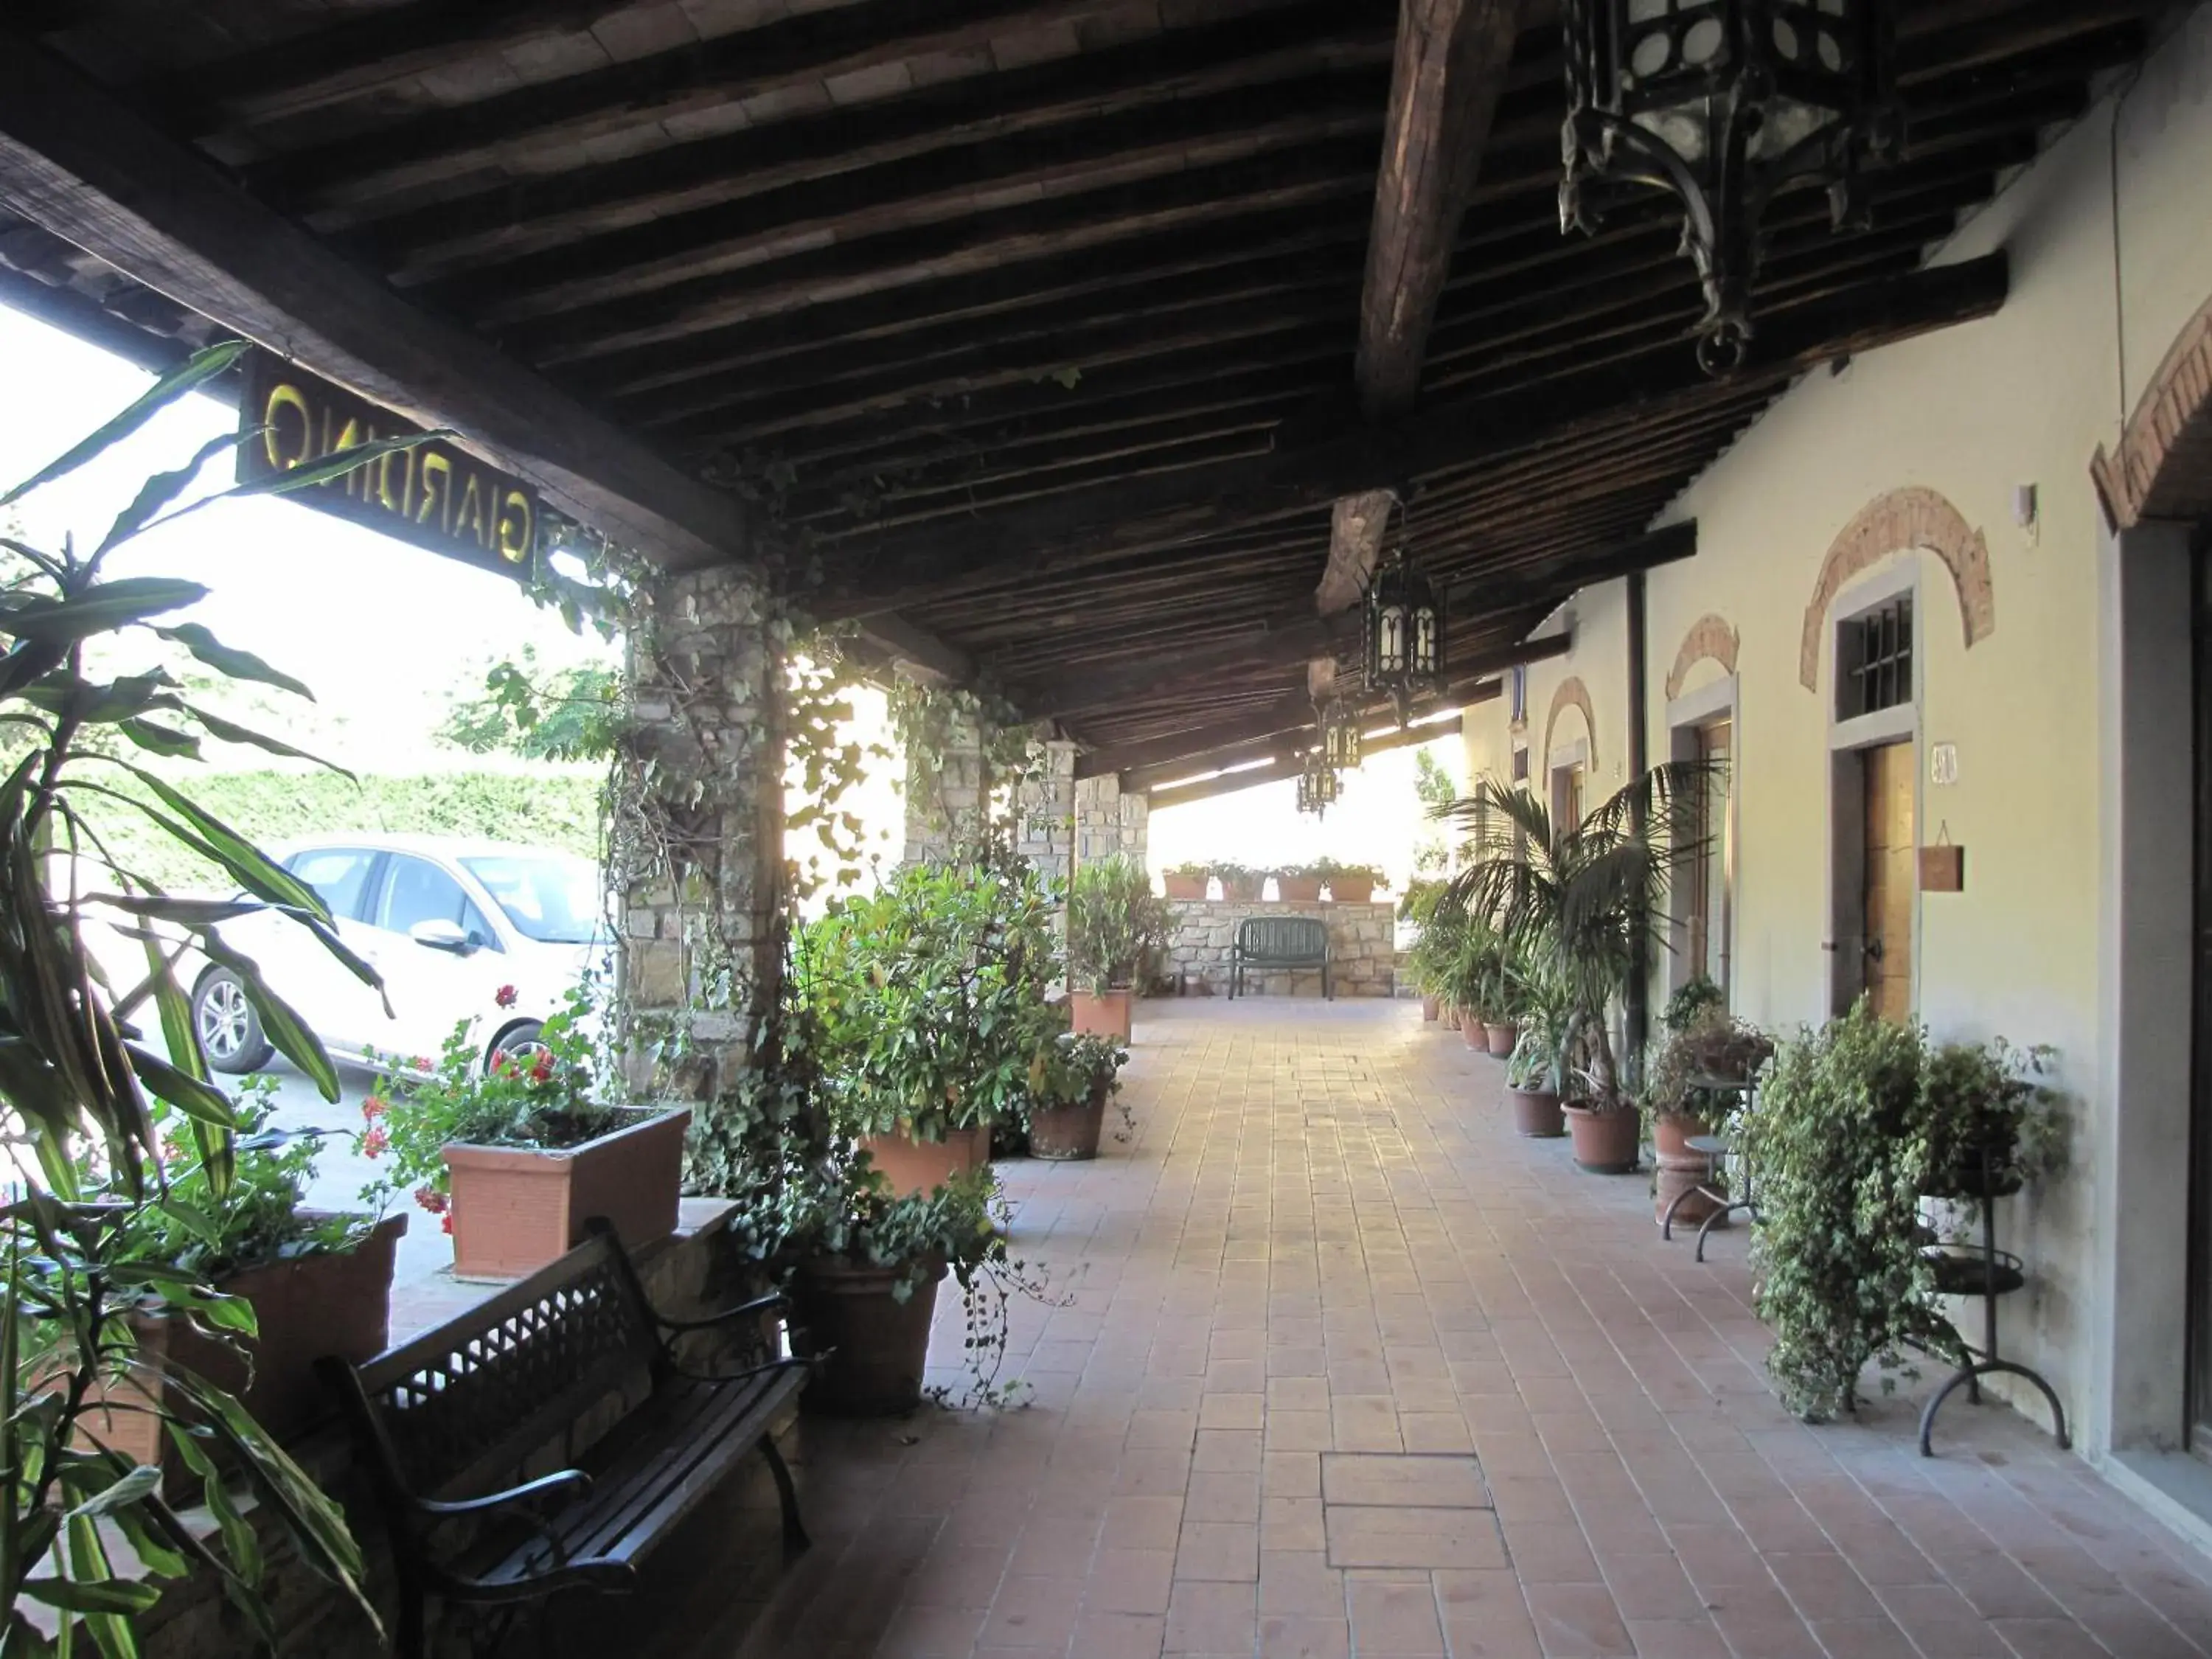 Facade/entrance, Patio/Outdoor Area in Residence Casprini da Omero